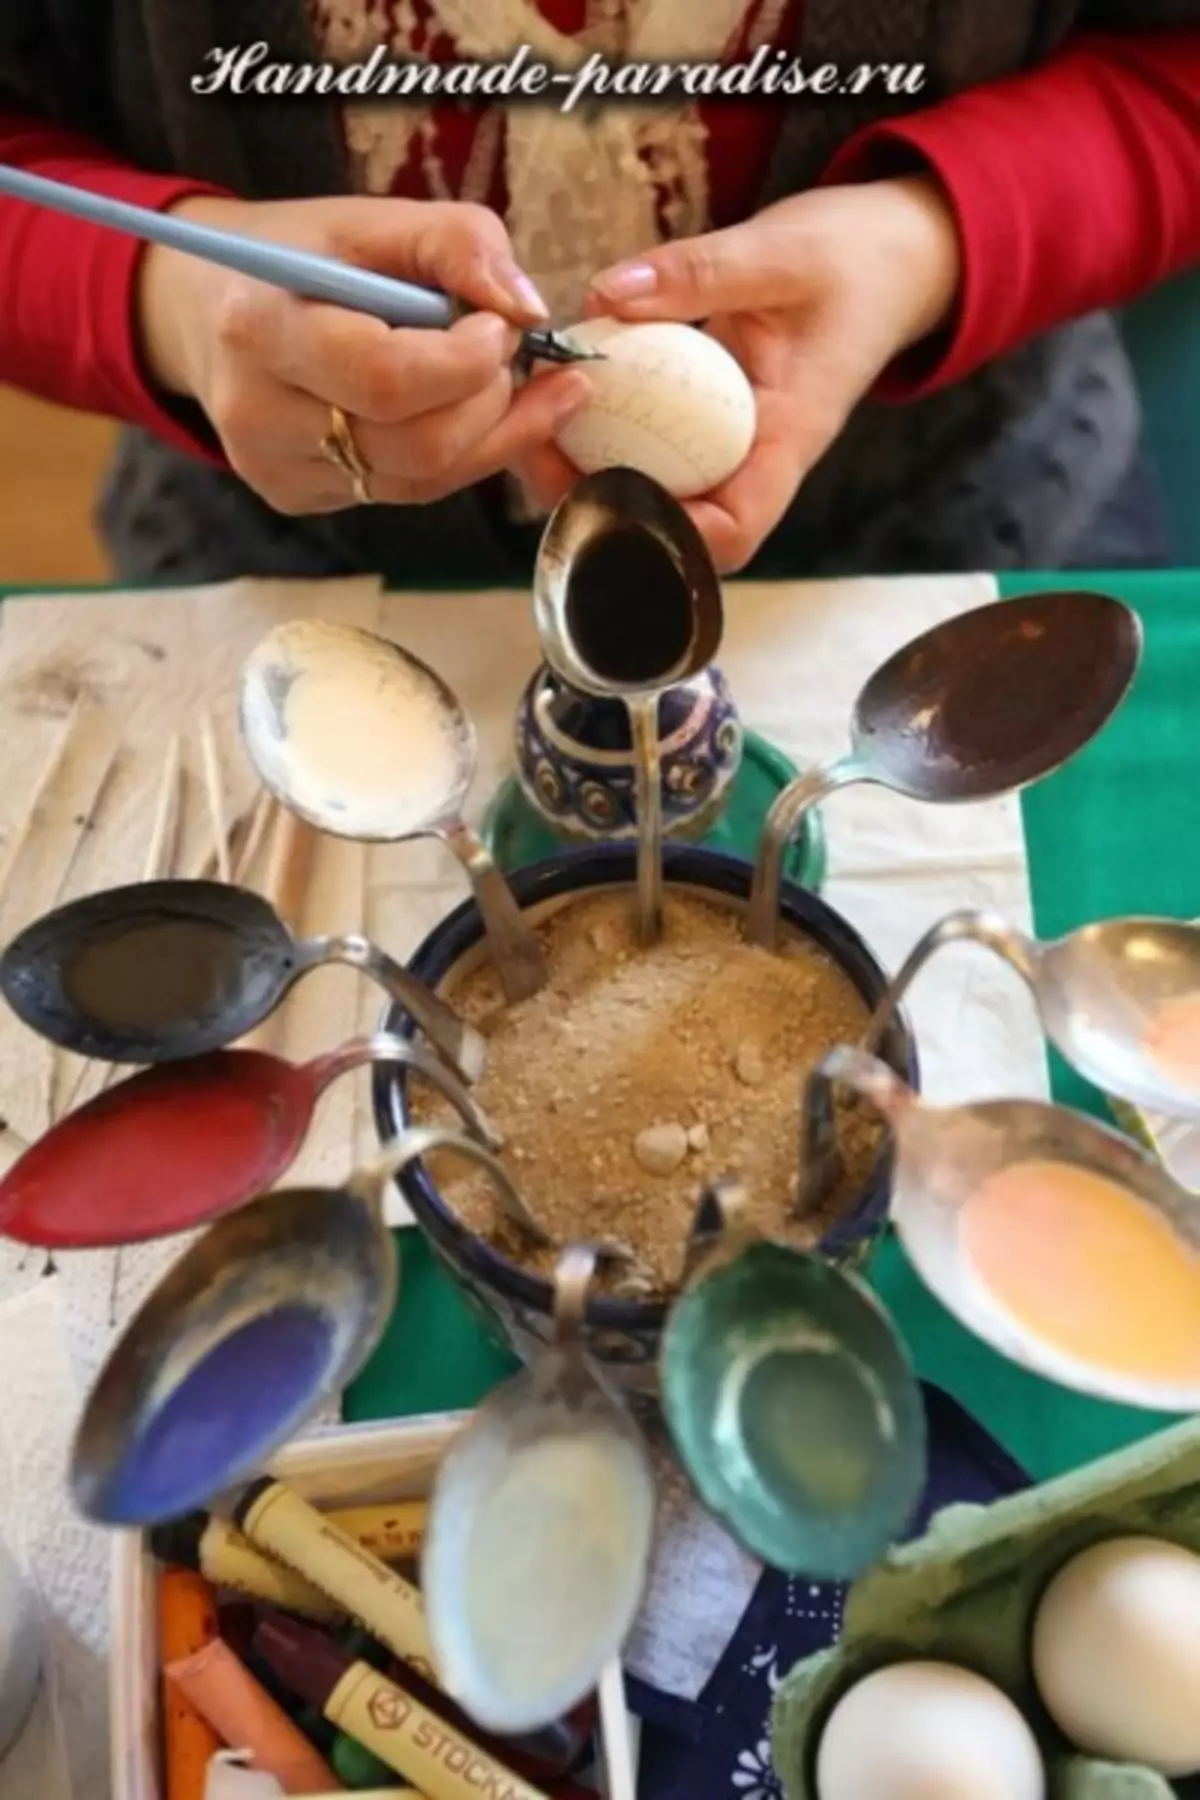 Eggs tapybos vaškas: magistro klasė namuose su nuotraukomis ir schemomis